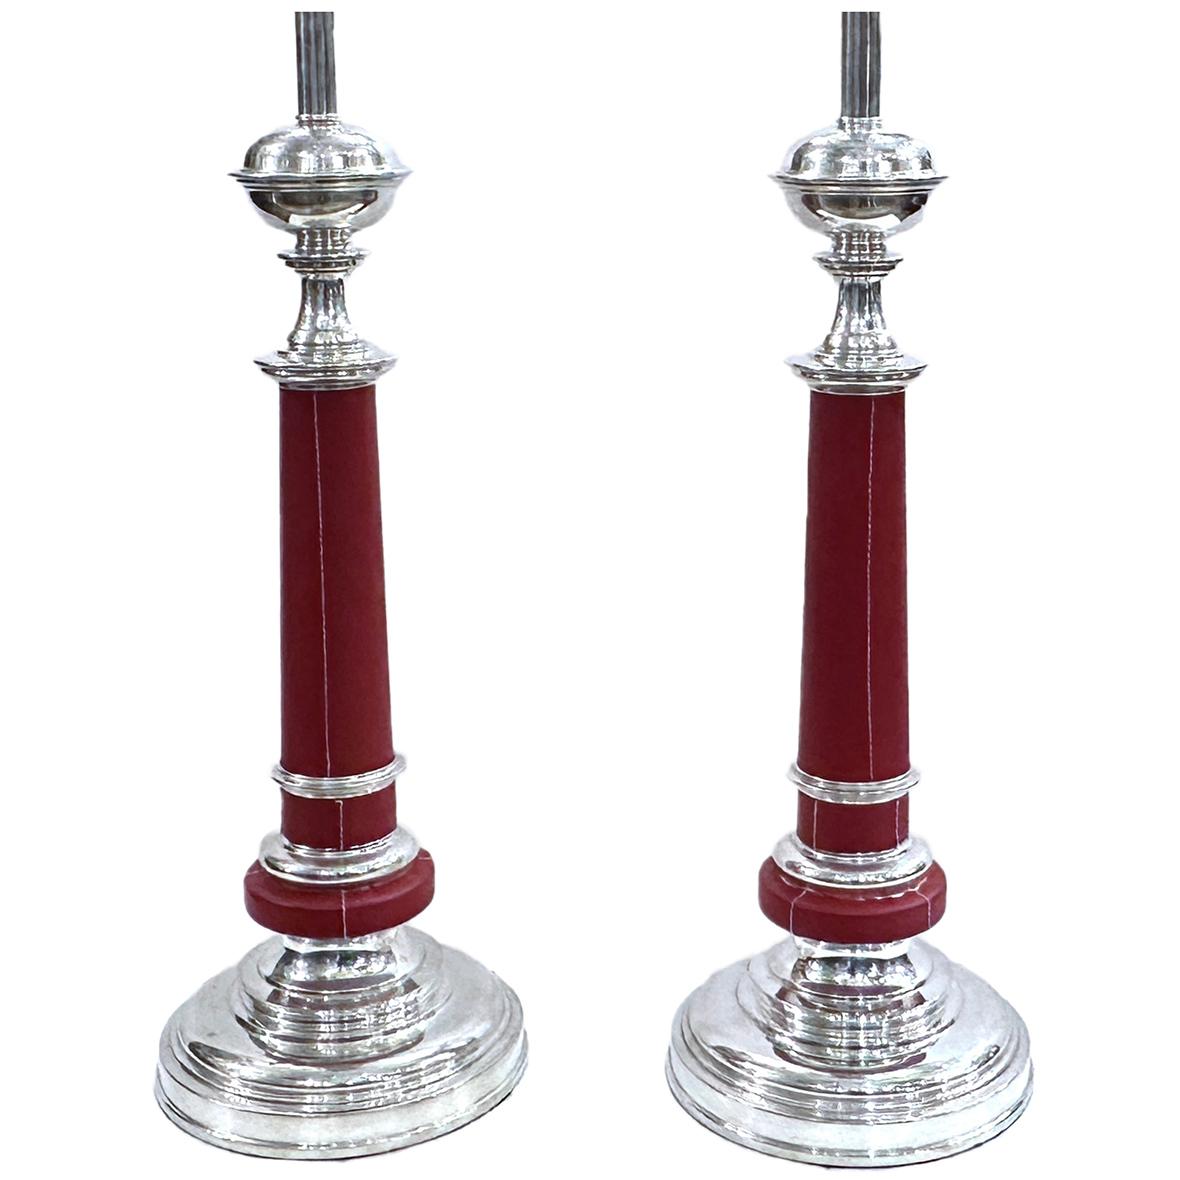 Paire de lampes françaises des années 1950 en métal argenté avec corps en cuir rouge.

Mesures :
Hauteur du corps : 24
Hauteur jusqu'à l'appui de l'abat-jour : 34